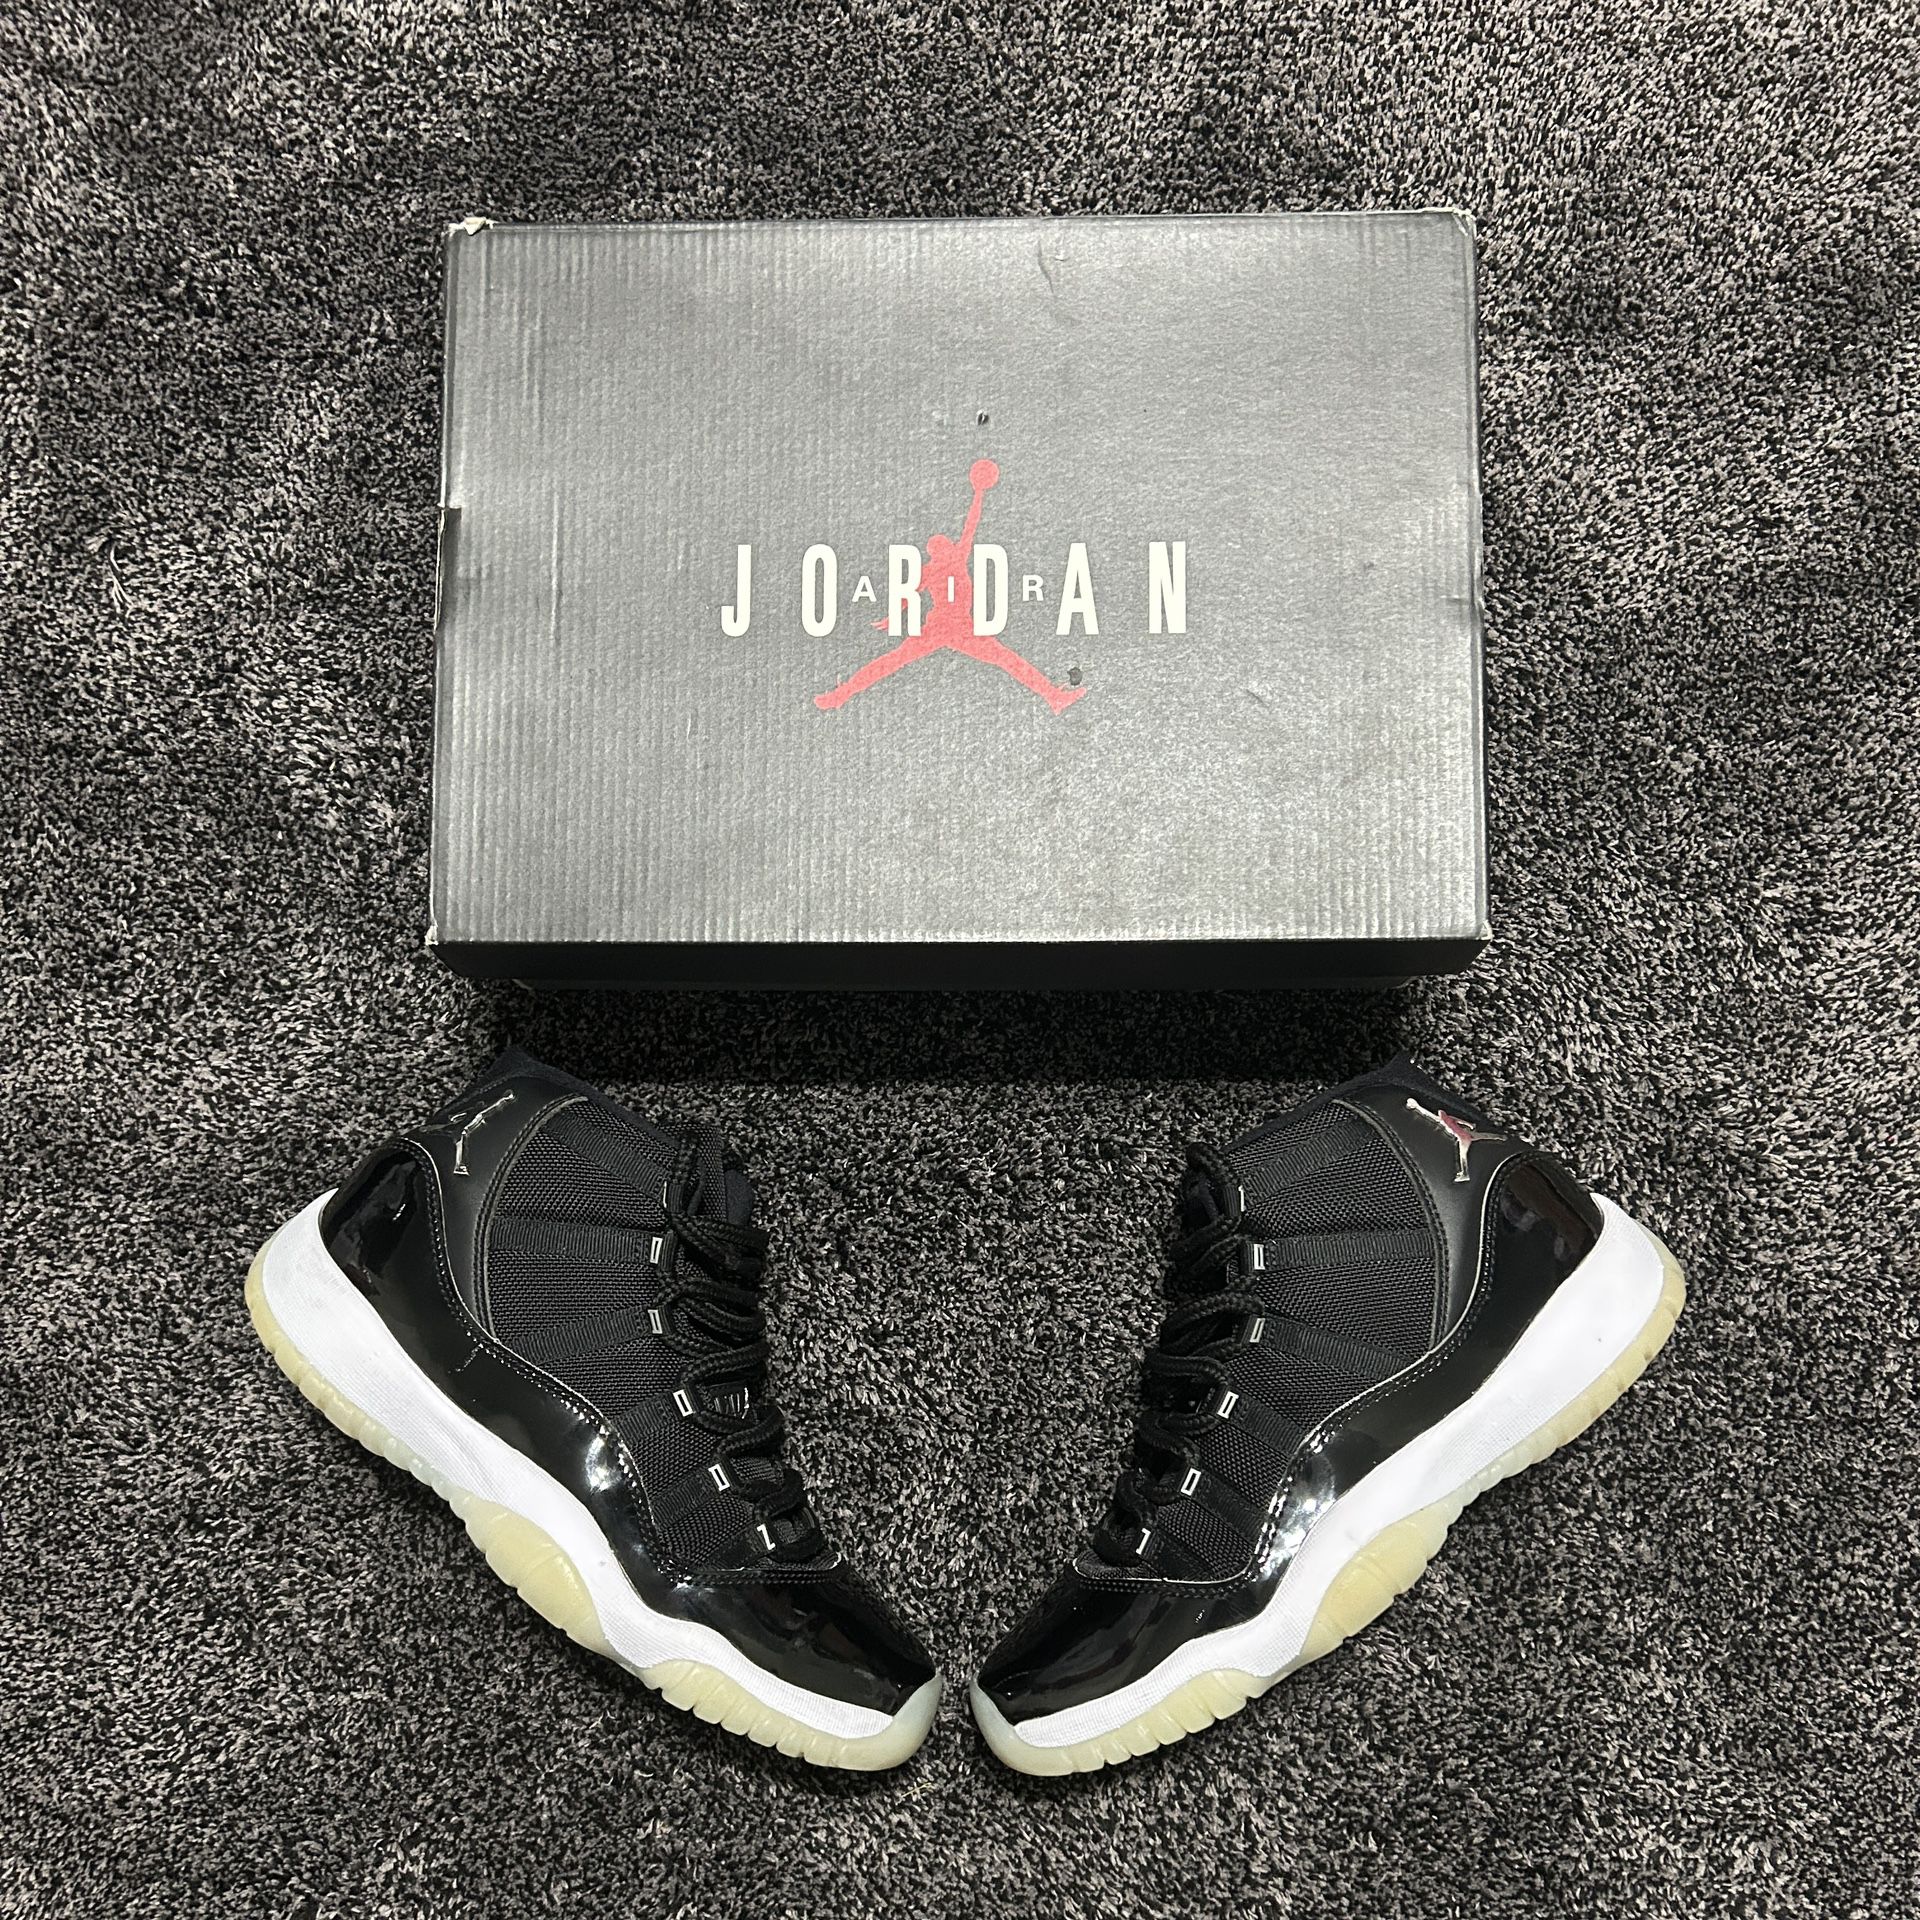 Jordan 11 Jubilee ♠️